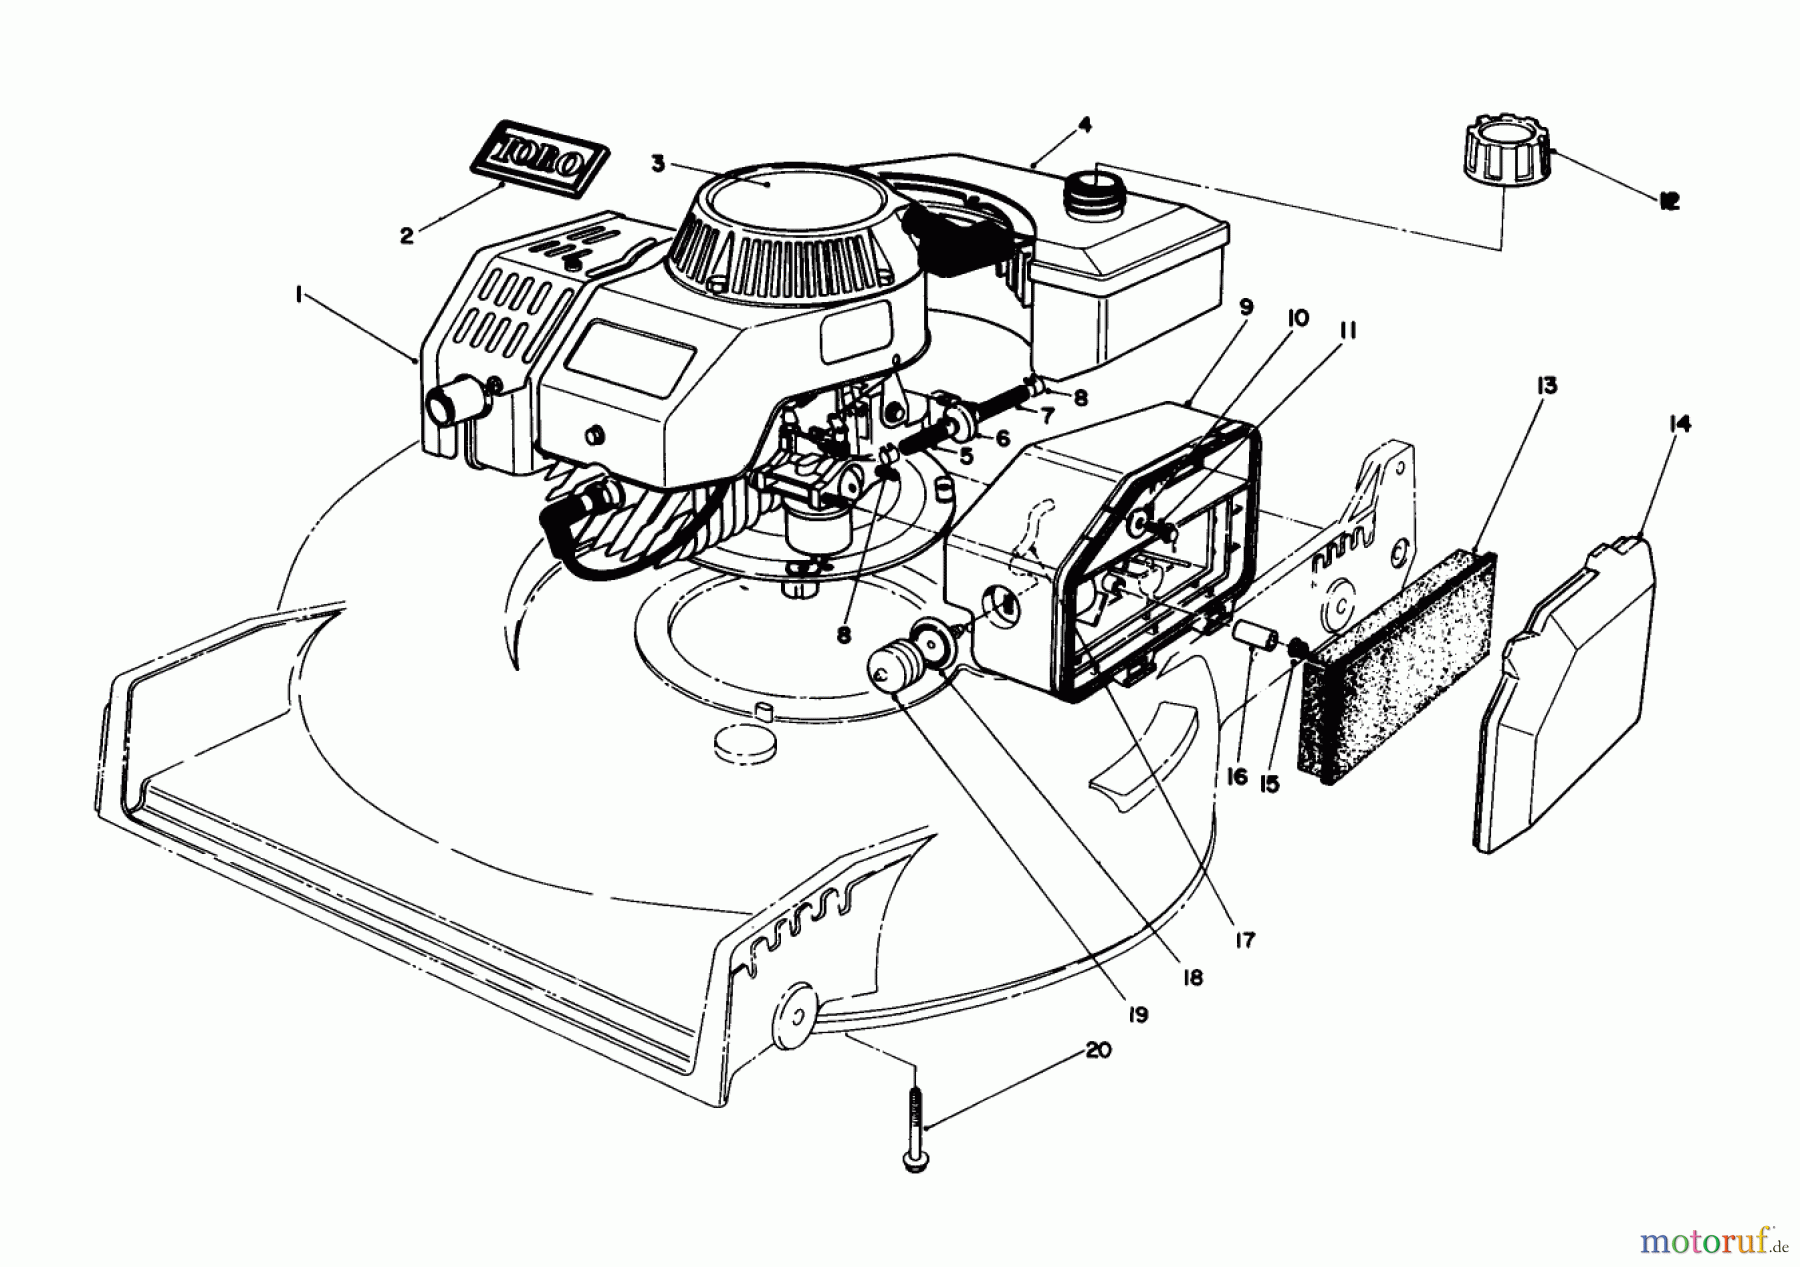  Toro Neu Mowers, Walk-Behind Seite 1 20584 - Toro Lawnmower, 1988 (8000001-8999999) ENGINE ASSEMBLY